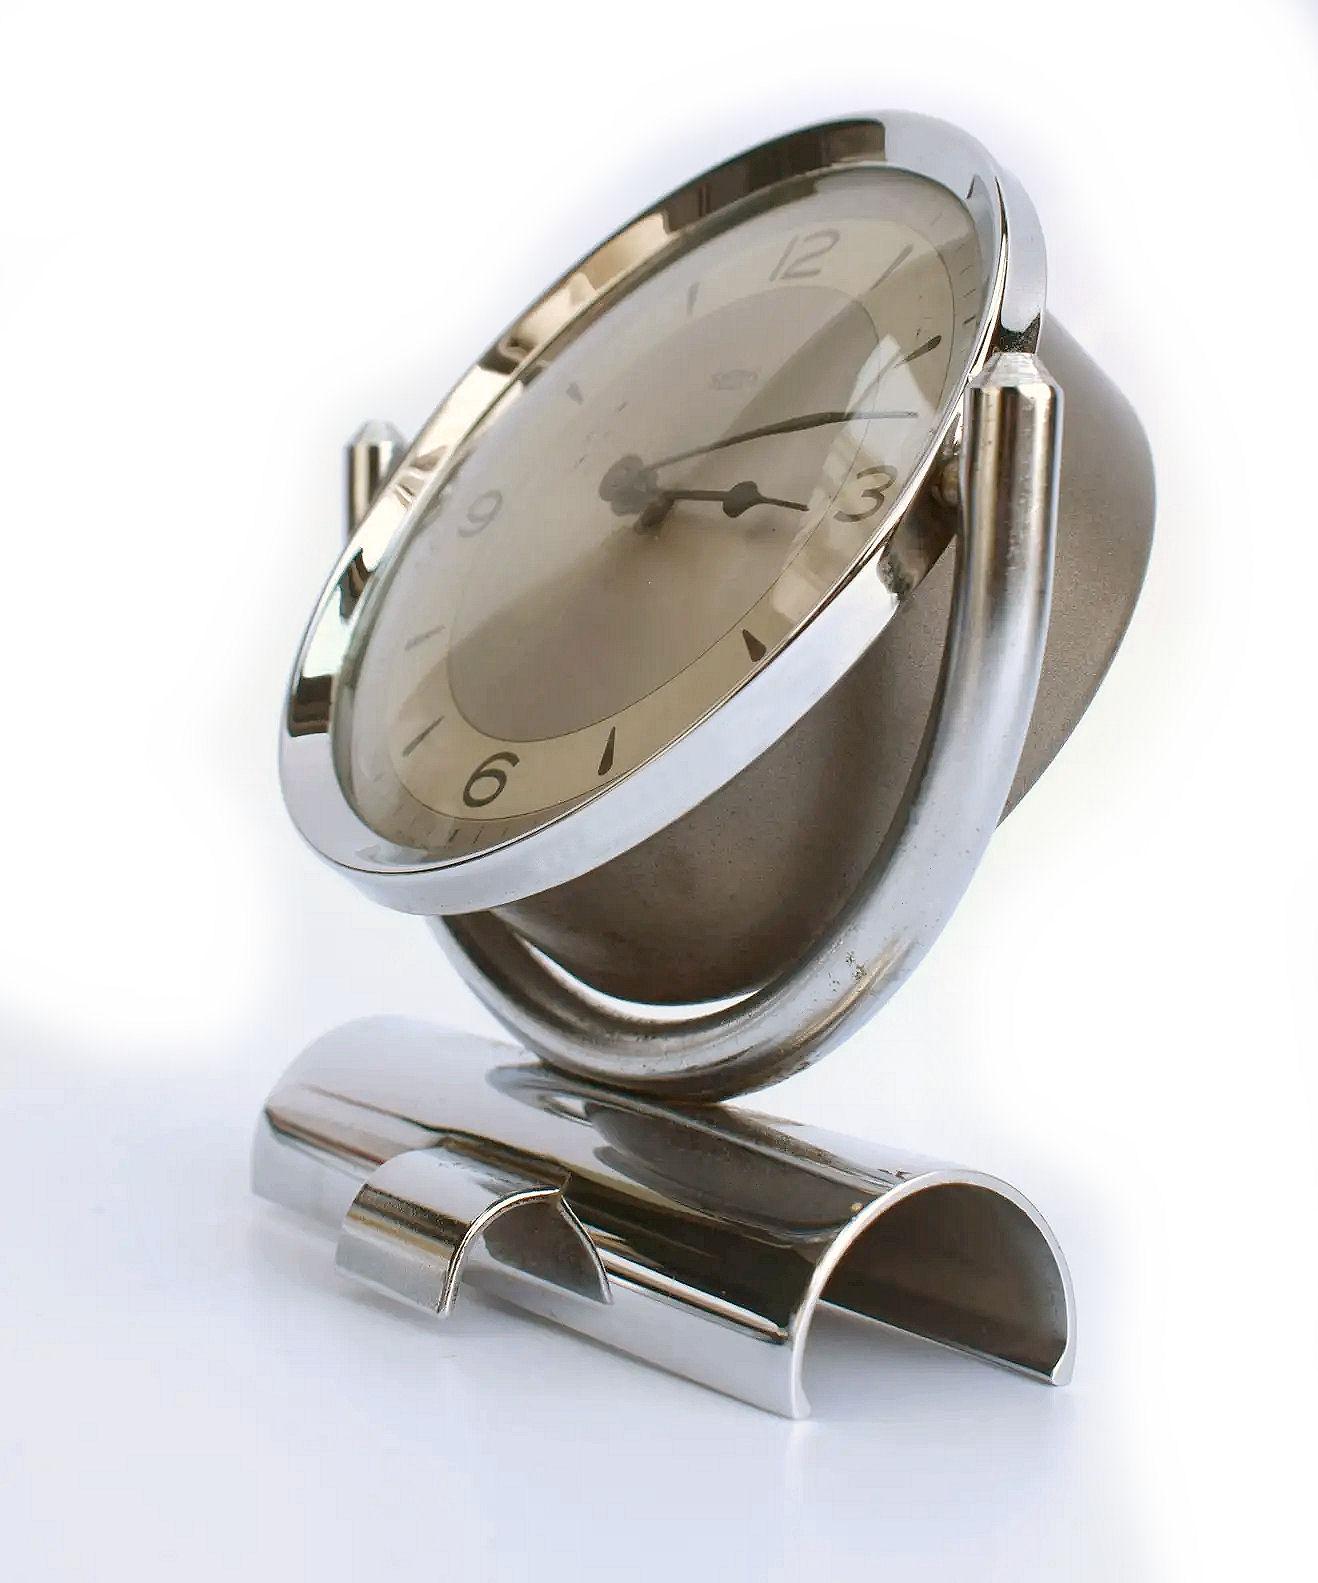 Nous vous présentons cette très élégante horloge Art Déco anglaise en chrome fabriquée par les horlogers britanniques 